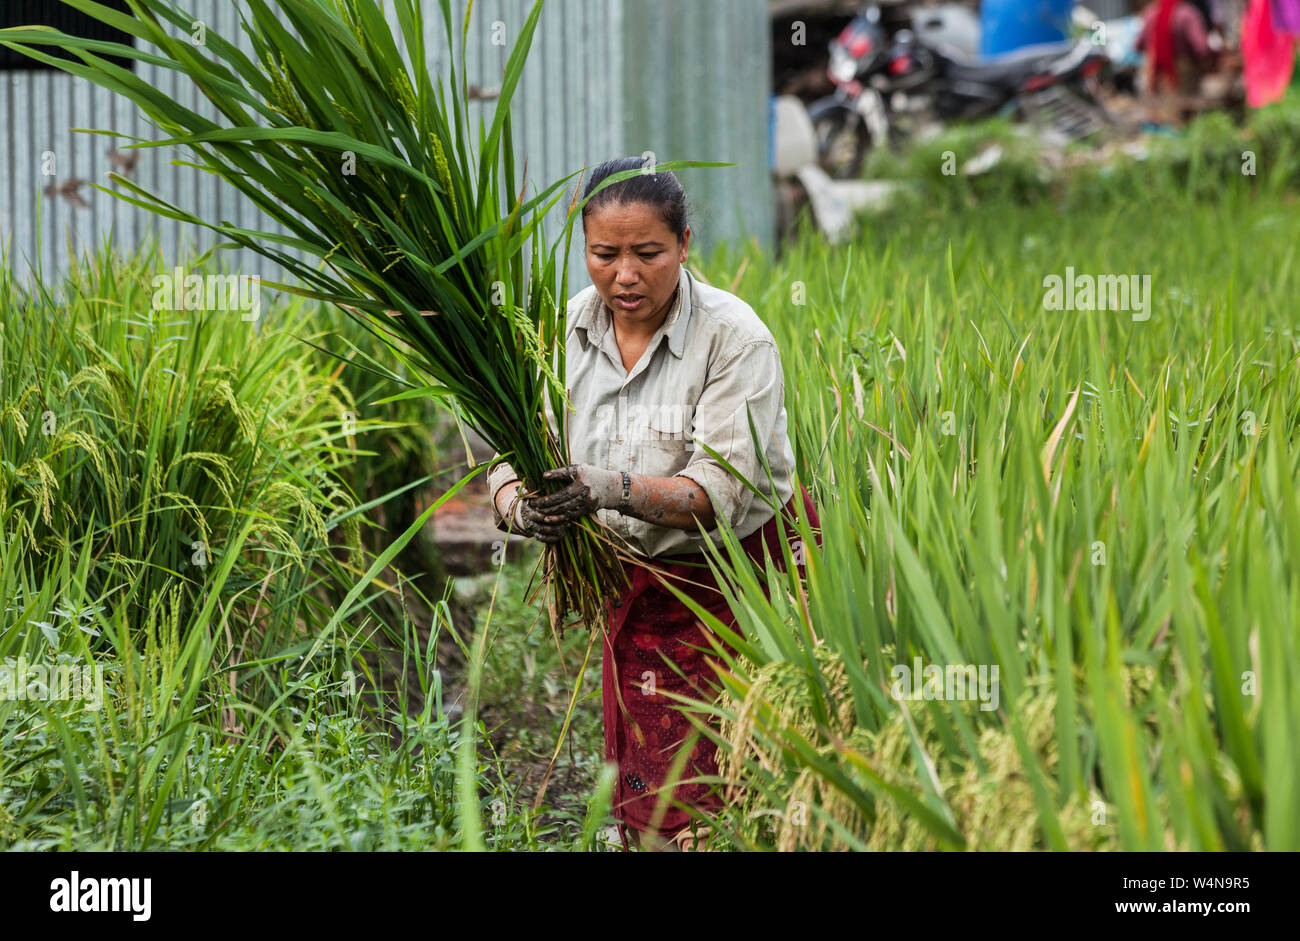 Women working in a crop field in Nepal Stock Photo